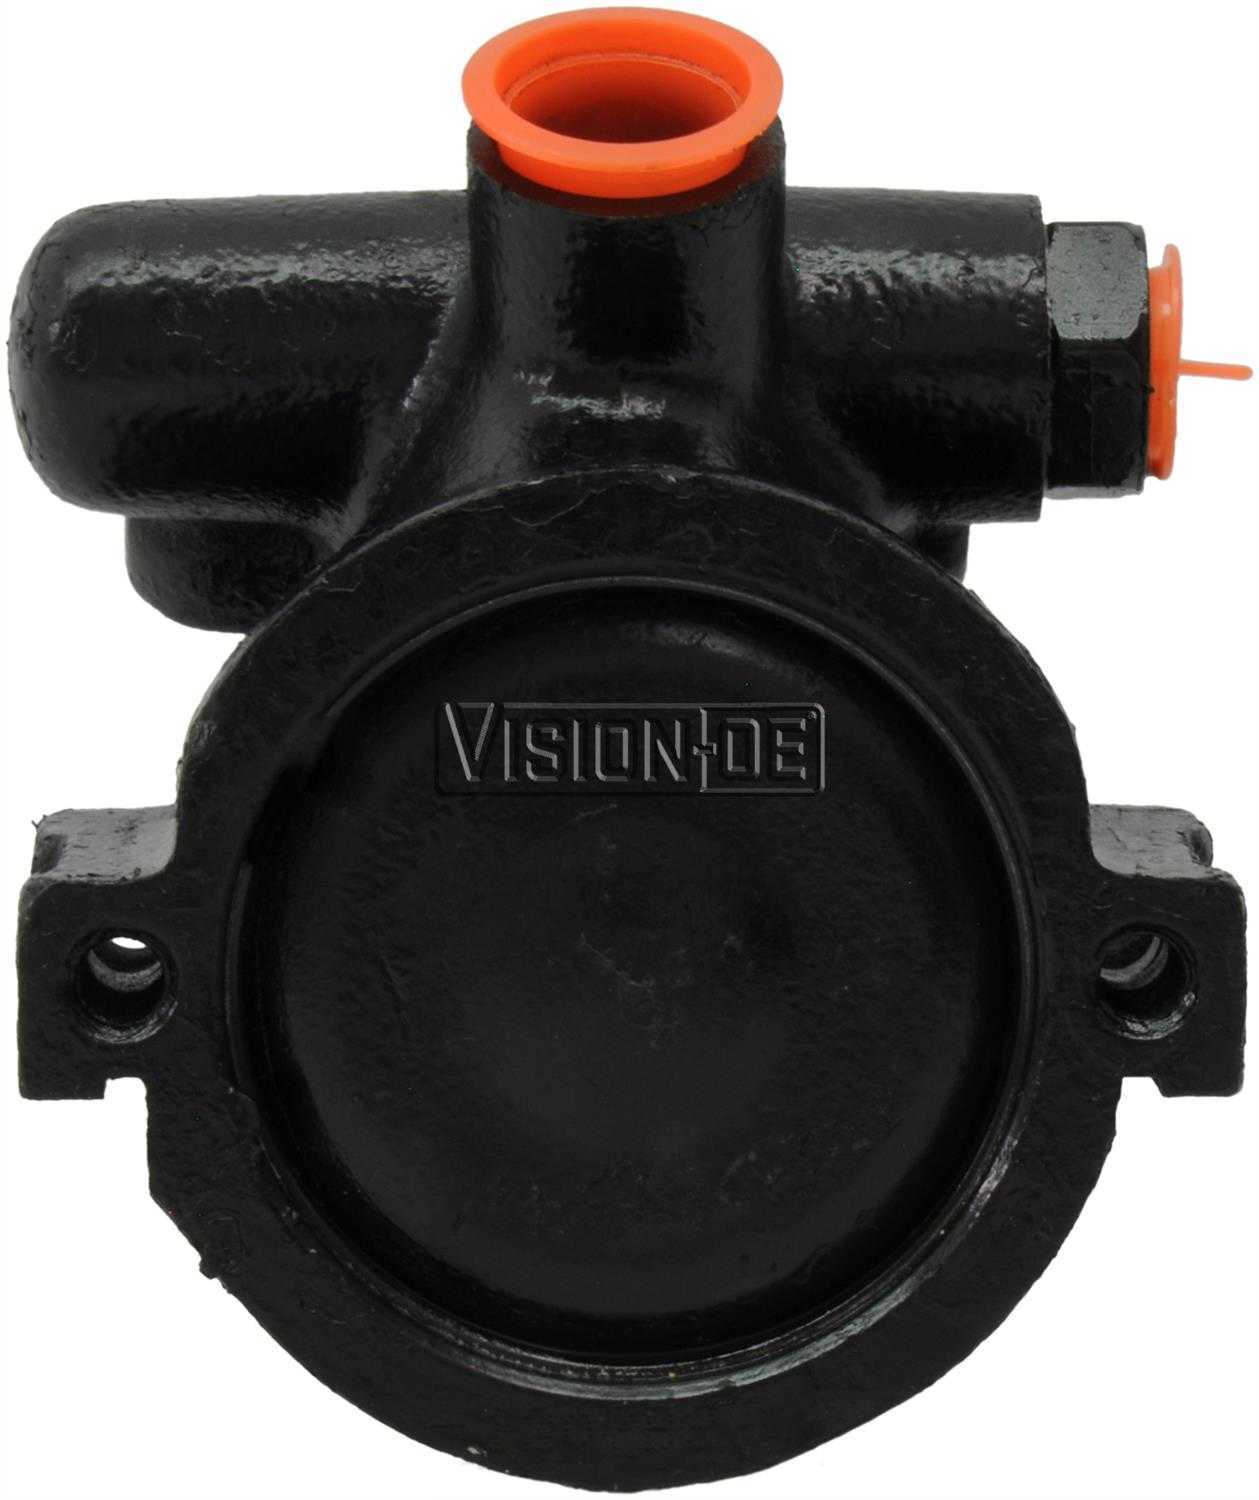 VISION-OE - Reman Power Steering Pump - VOE 734-0132